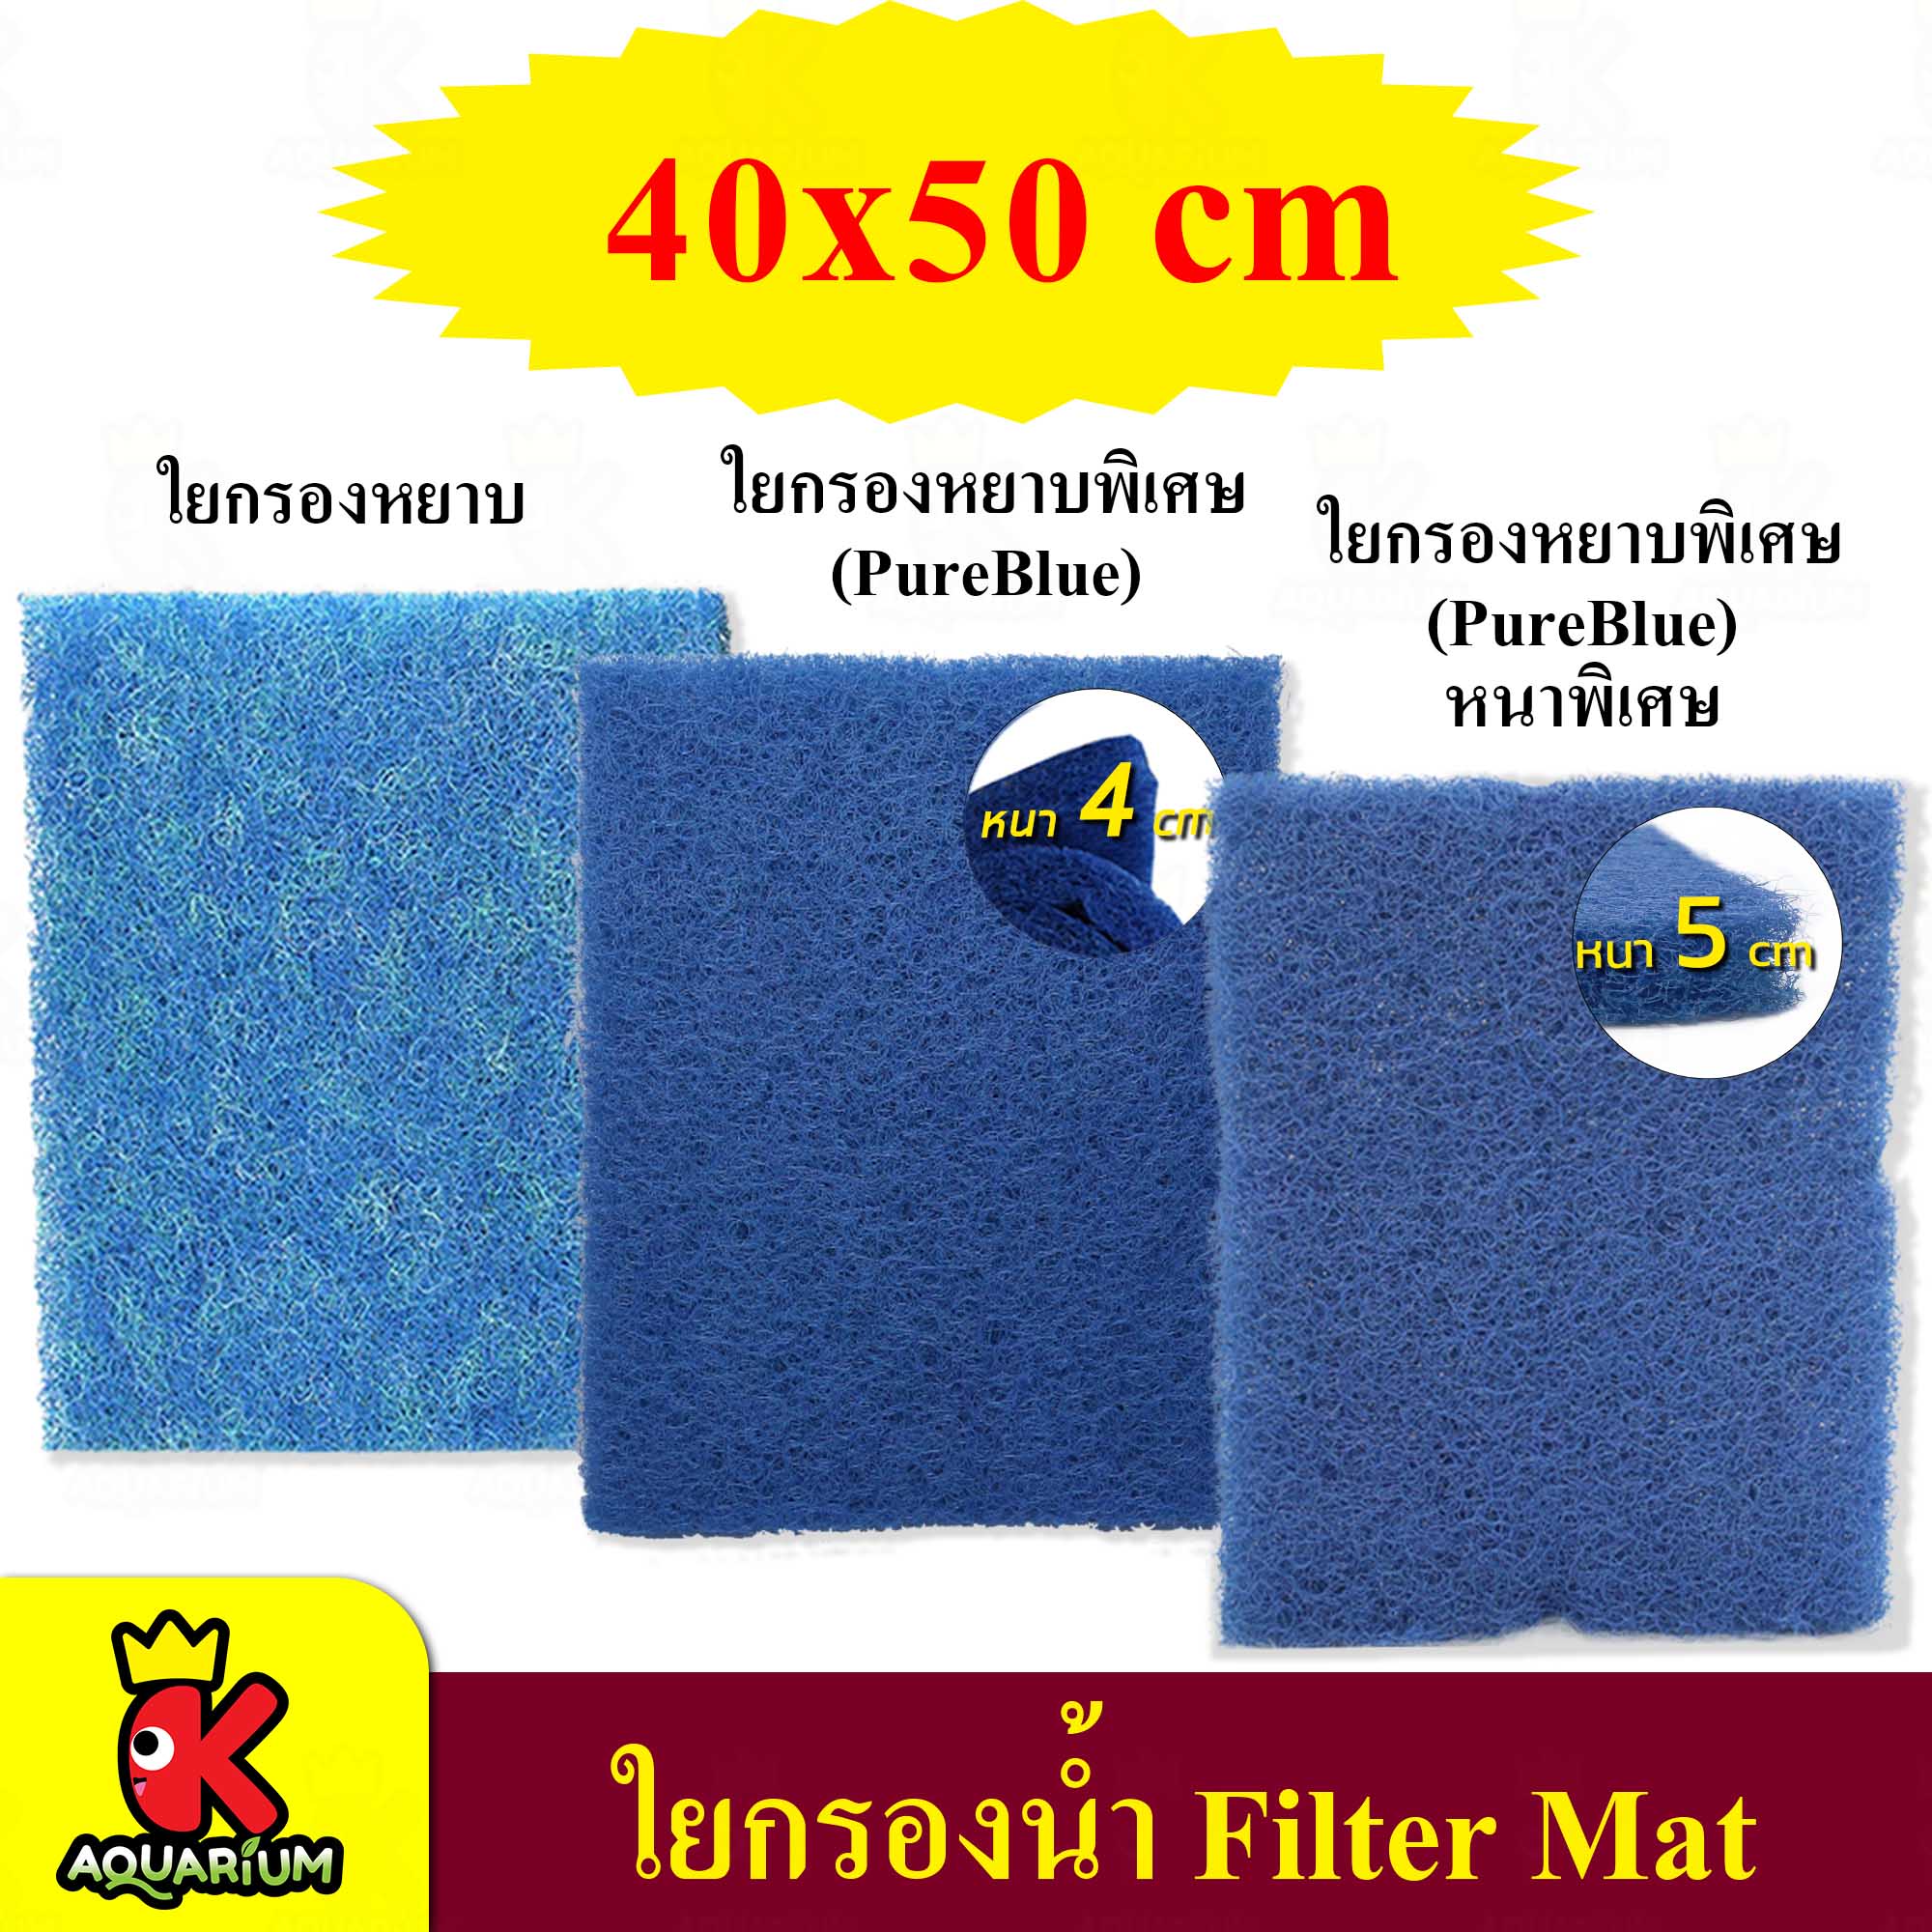 FILTER MAT ใยกรอง ขนาด 40x50 cm สีฟ้า ใยกรองน้ำ กรองน้ำ ( ใยหยาบ / Pure Blue / Pure Blue (หนาพิเศษ) )